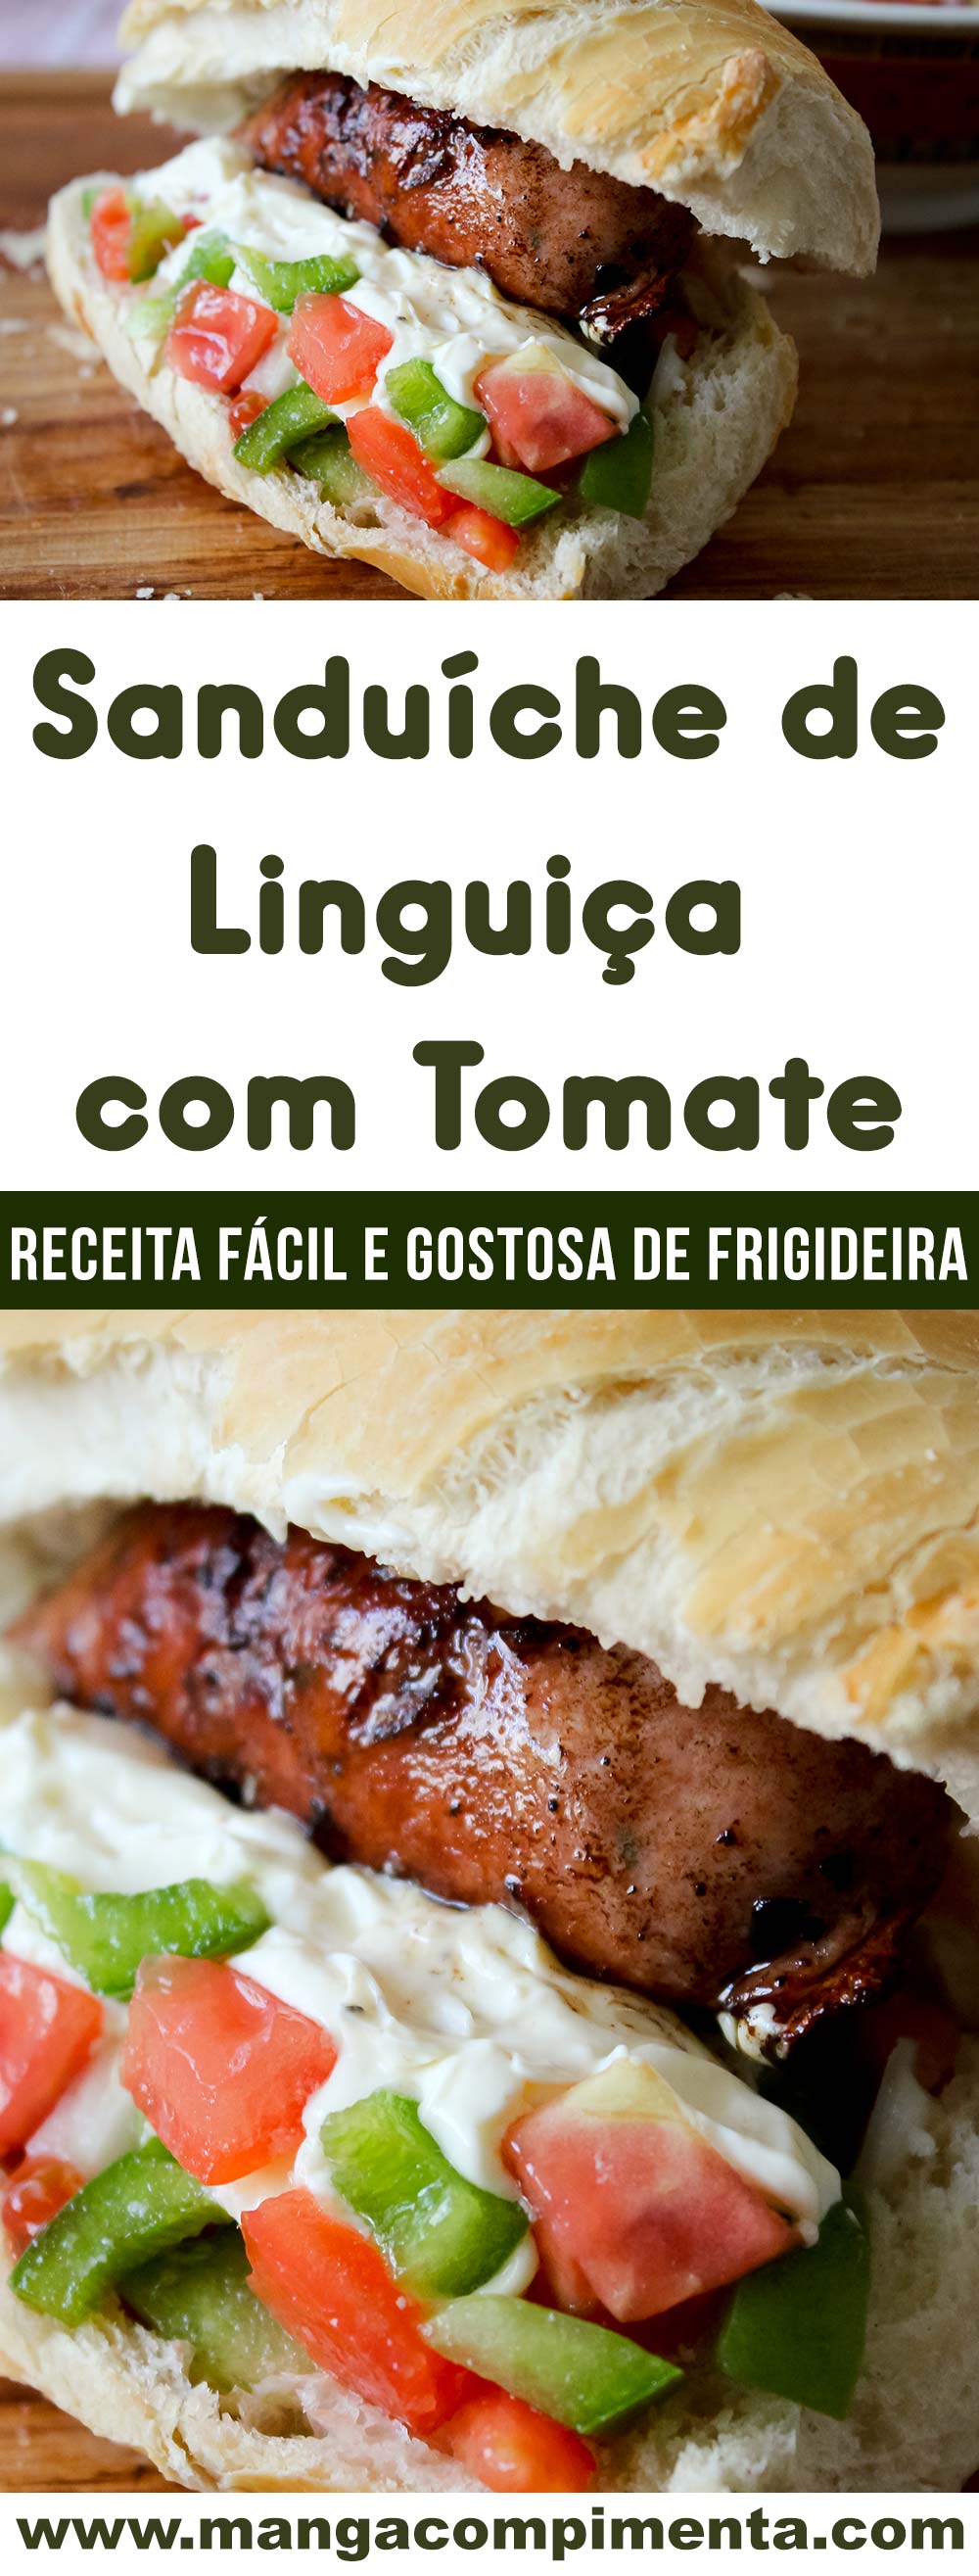 Sanduíche de Linguiça com Tomate - prepare um lanche fácil e delicioso no final do dia!